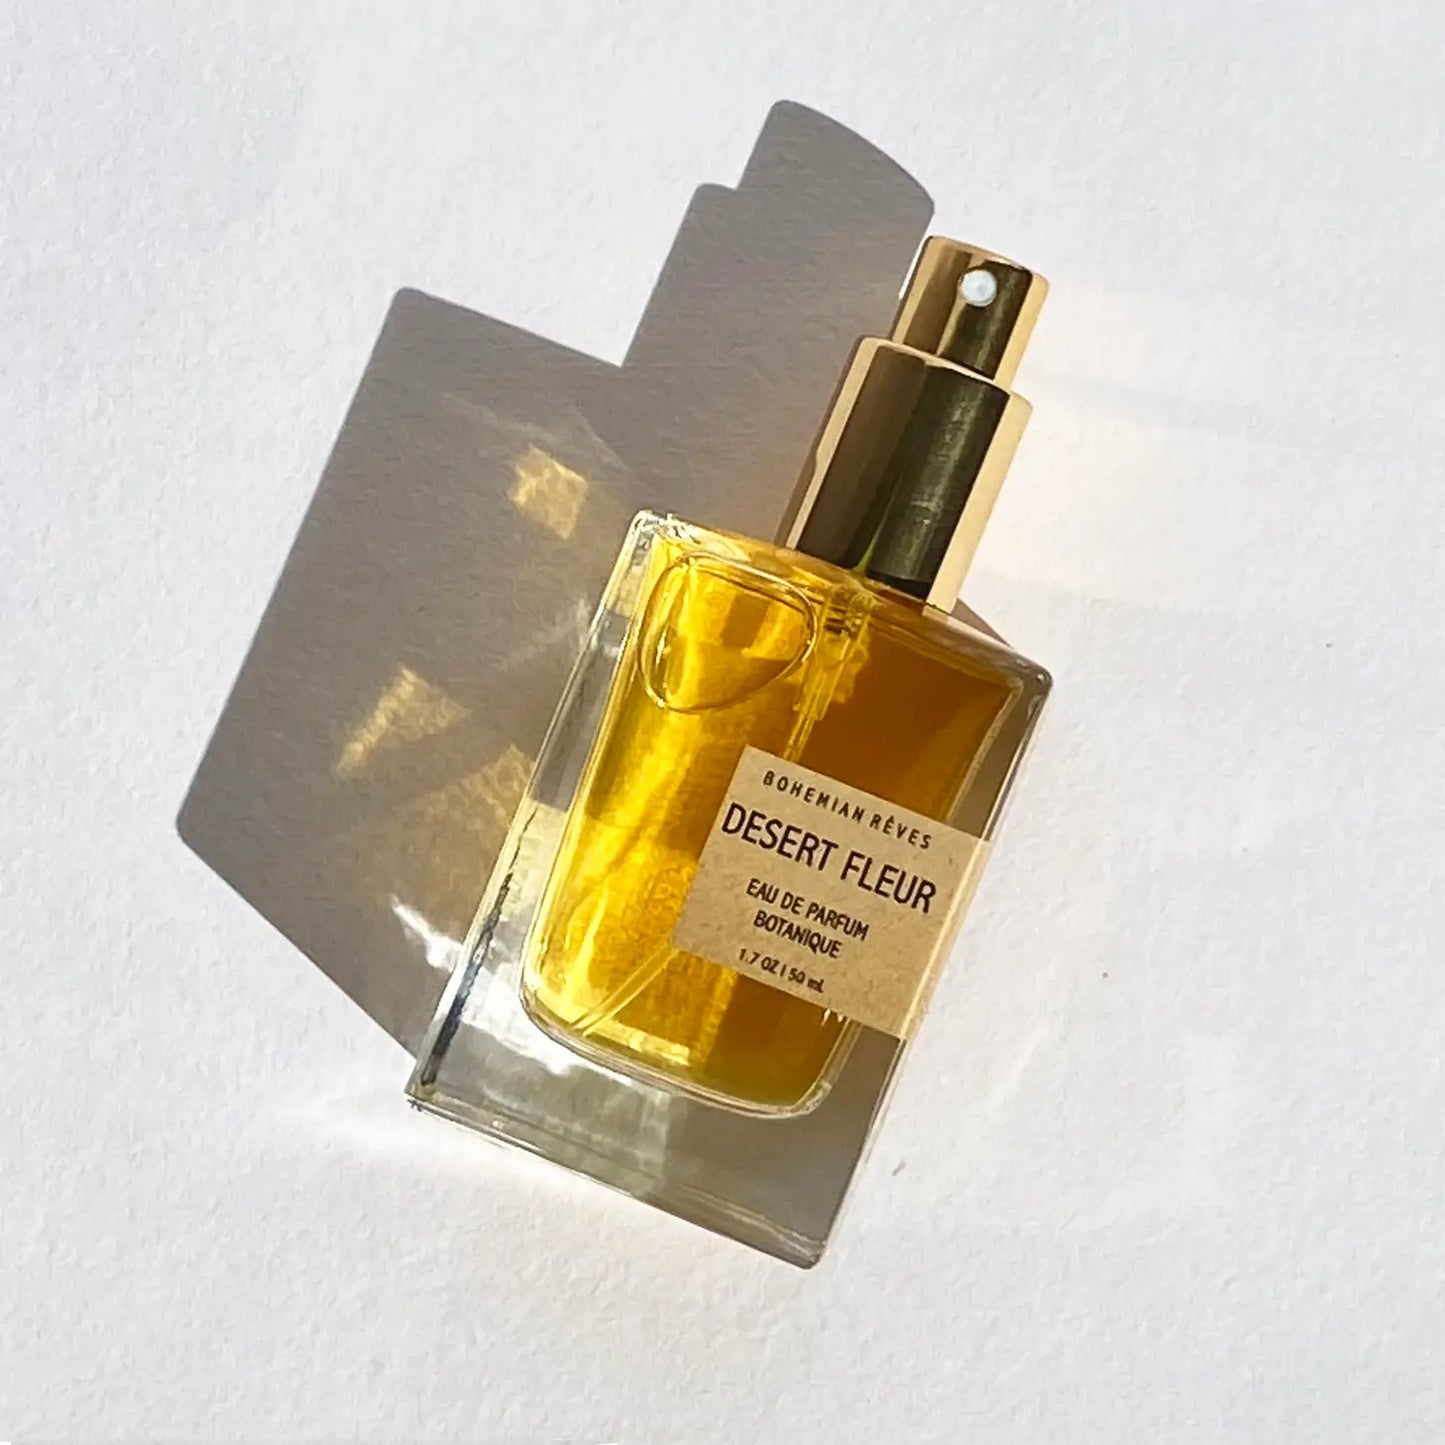 Desert Fleur Botanical Perfume Mist 1.7oz Parfum